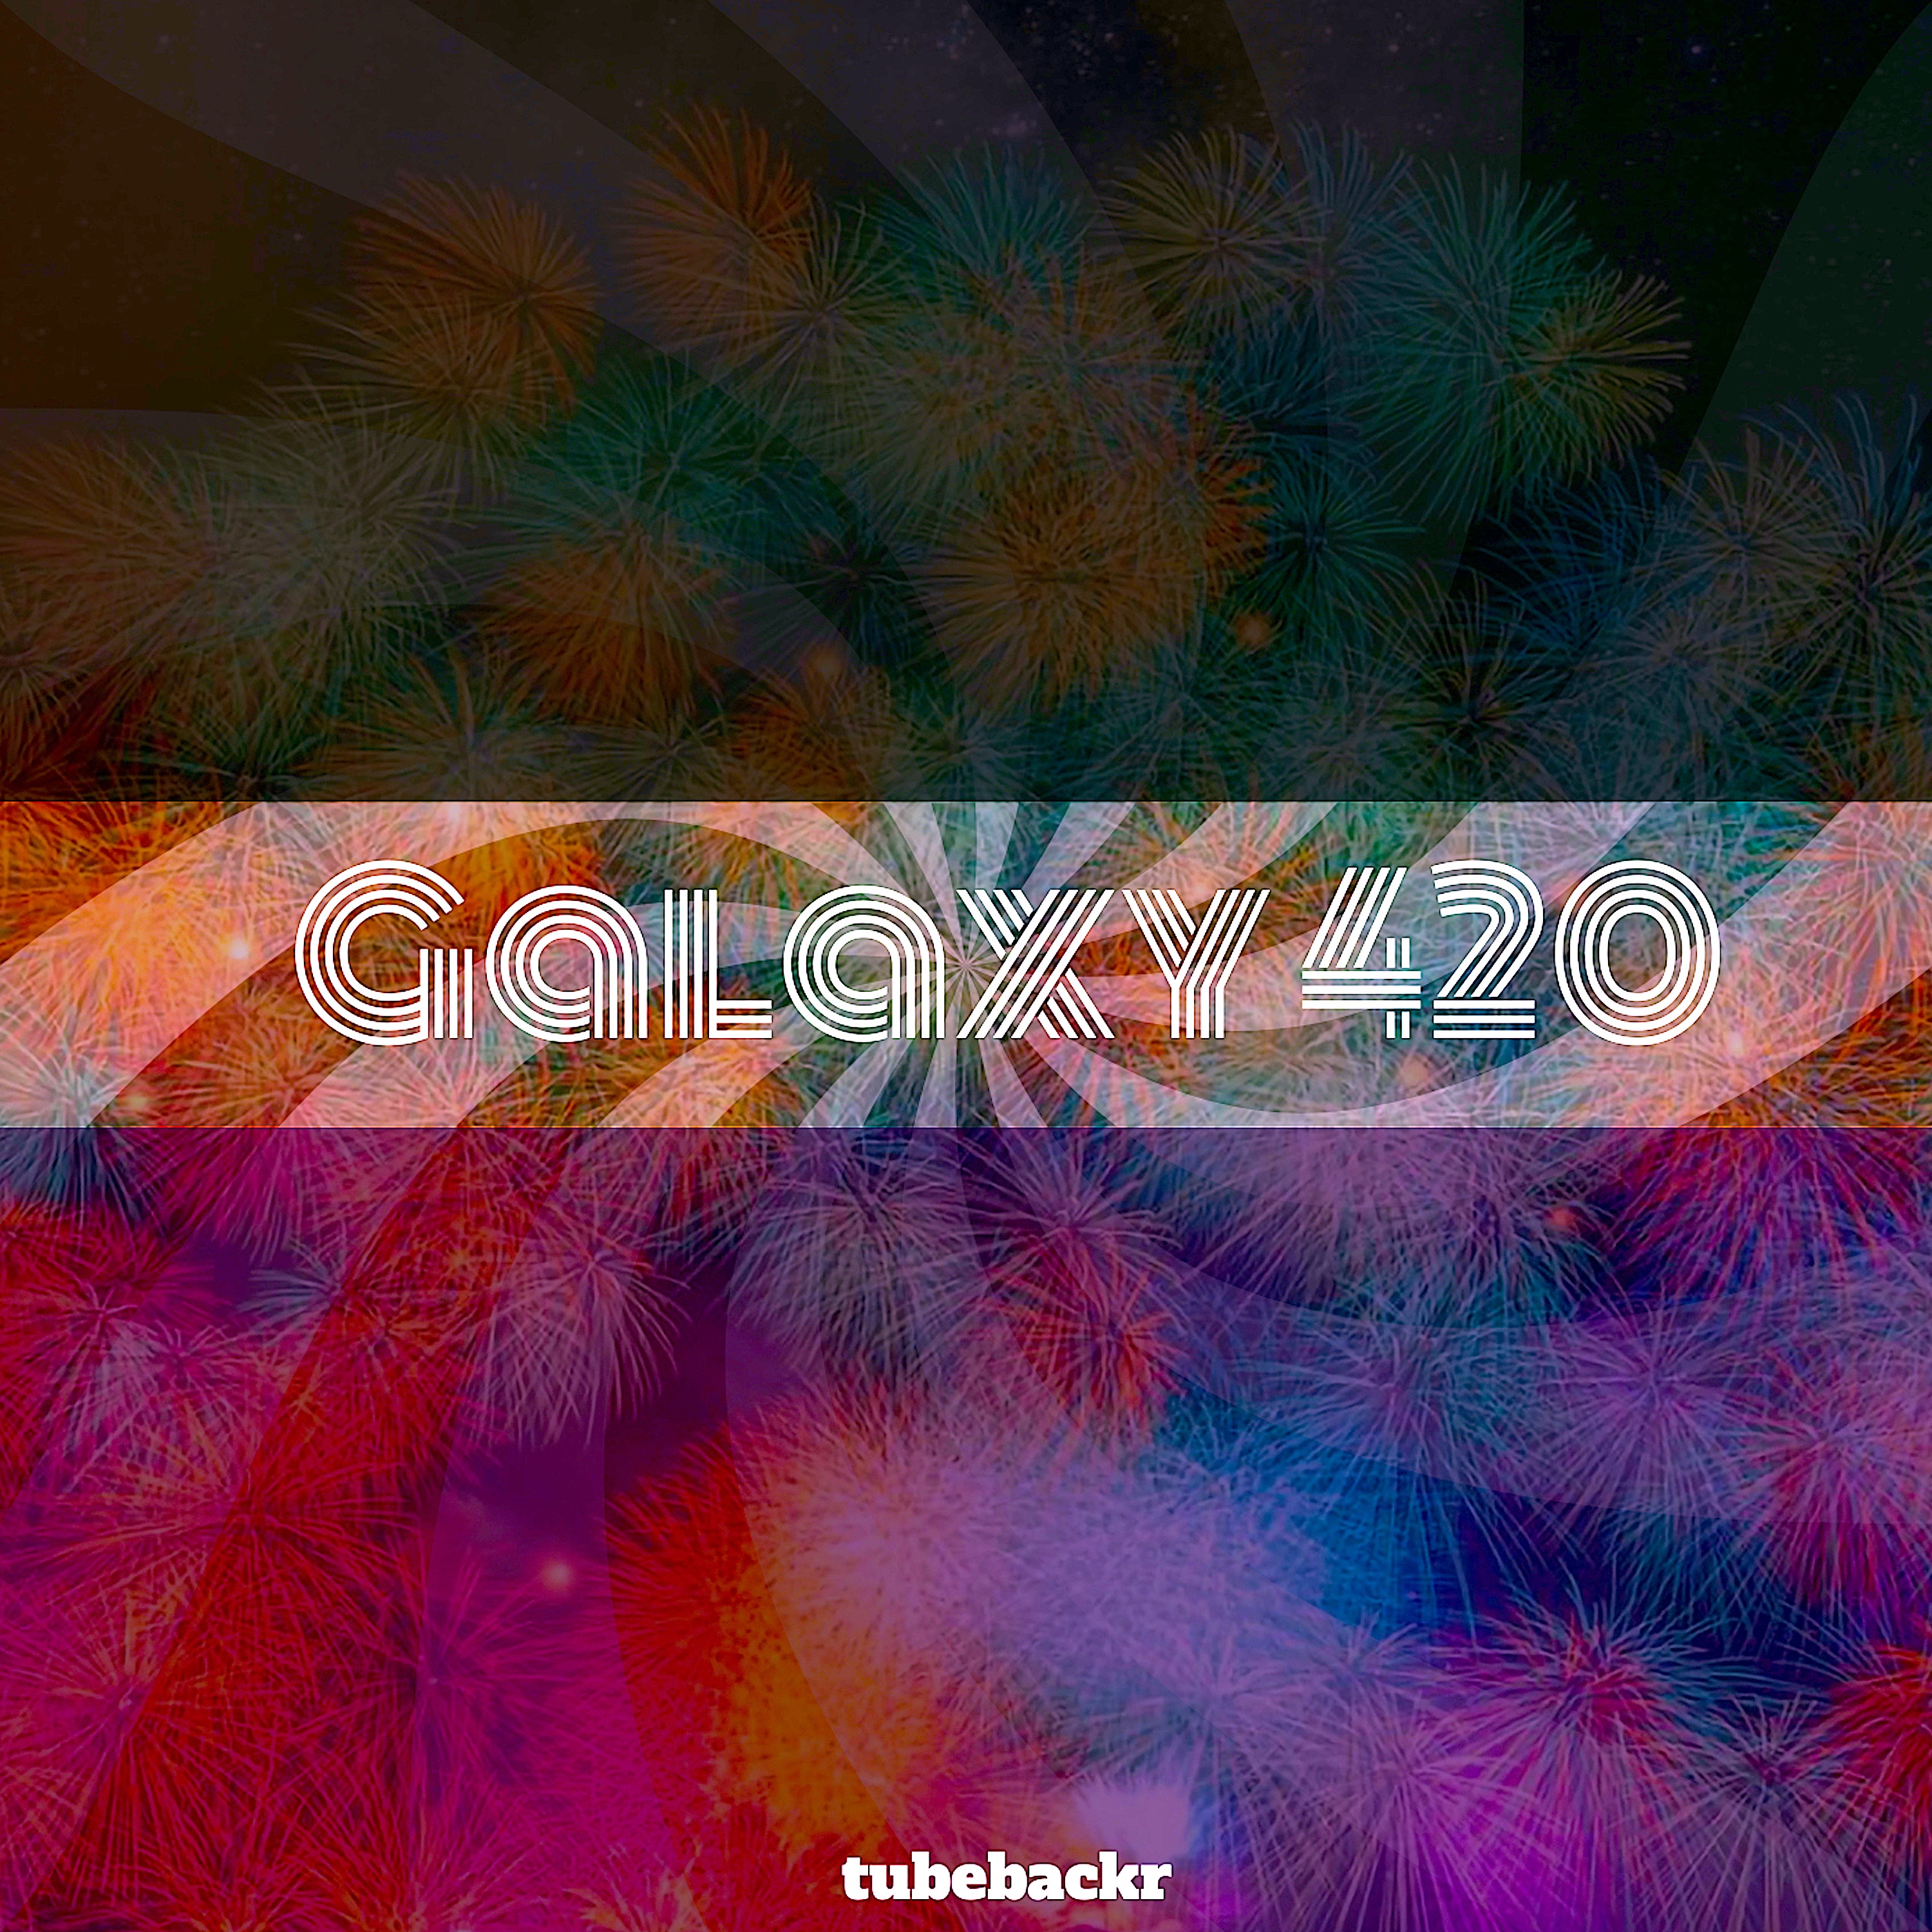 ဒေါင်းလုပ် Galaxy 420